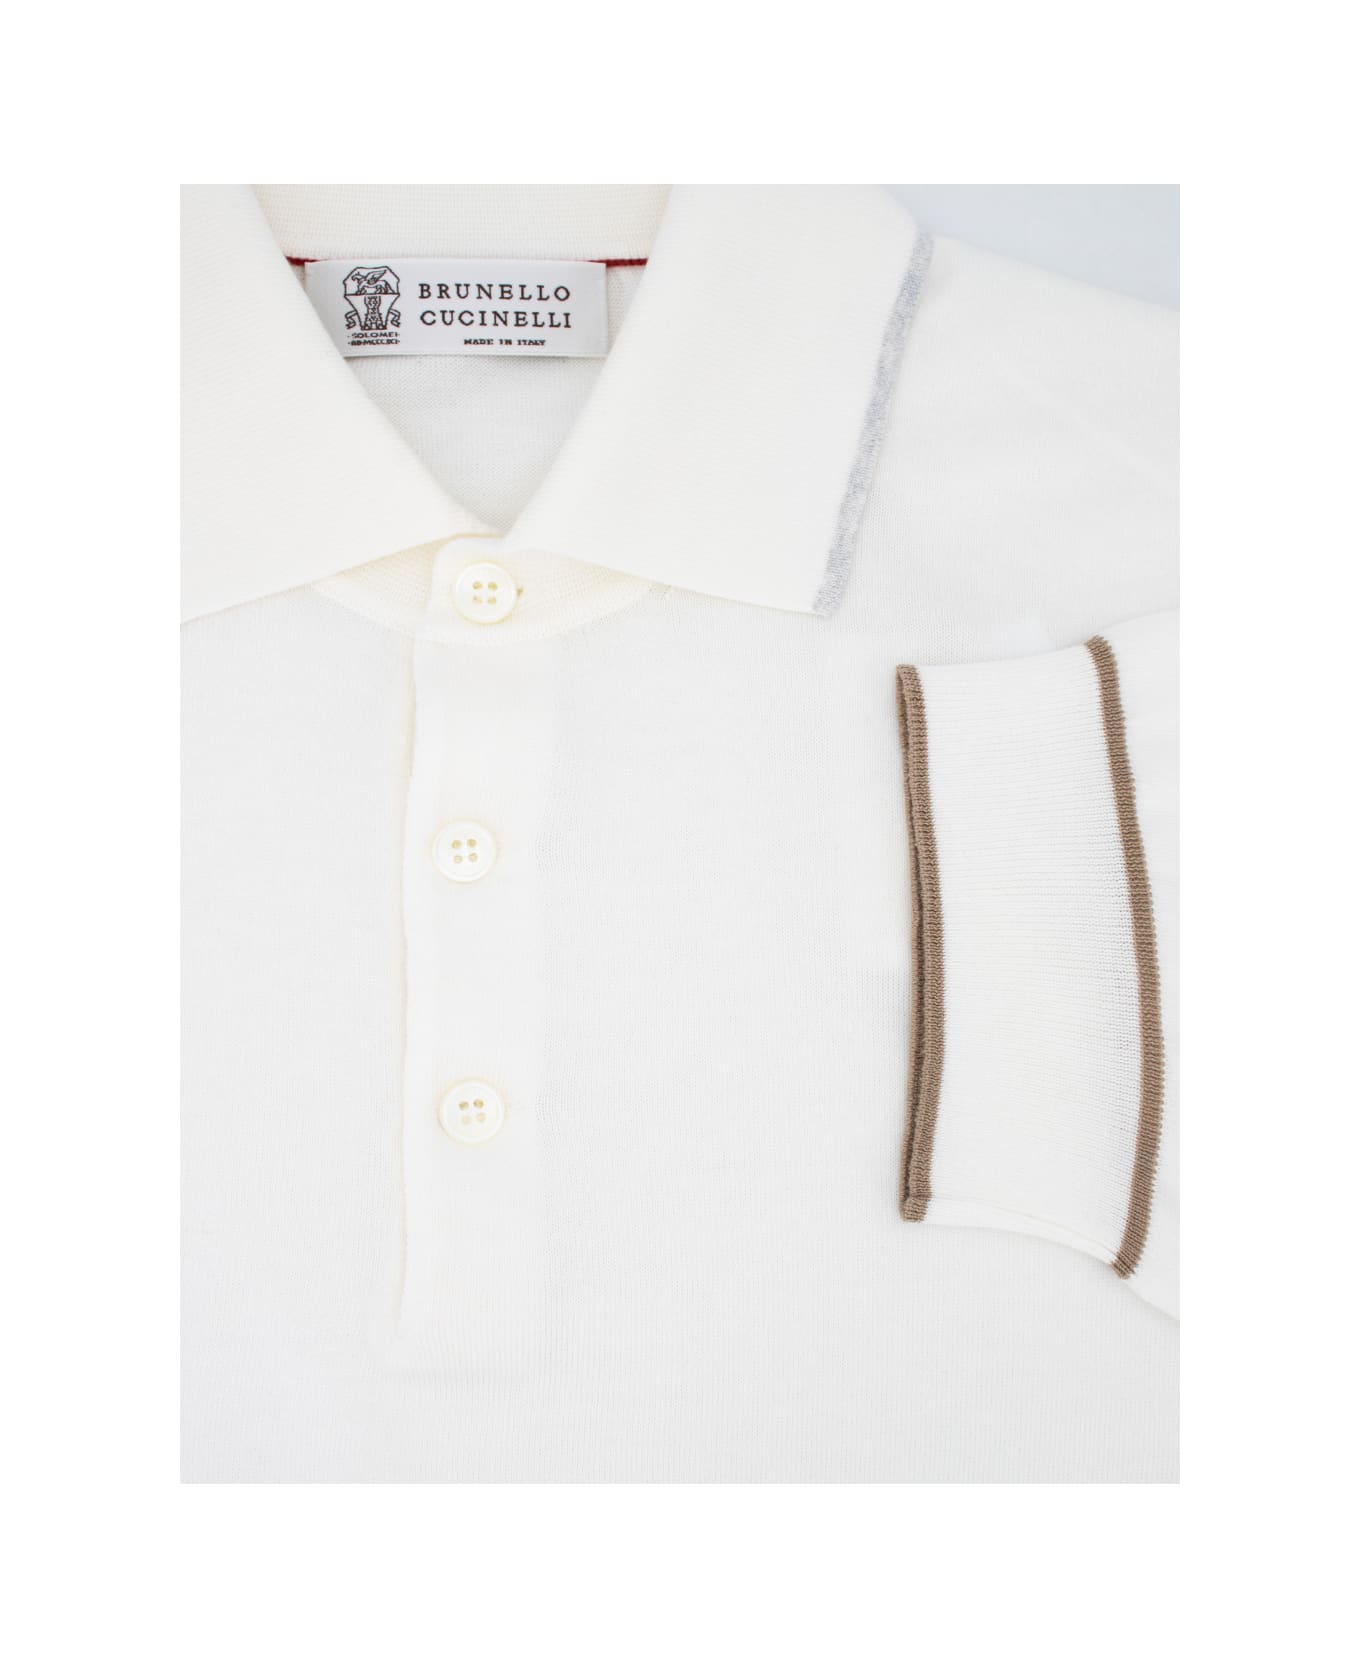 Brunello Cucinelli Polo Shirt - PANAMA_NEBBIA_CRETA ポロシャツ